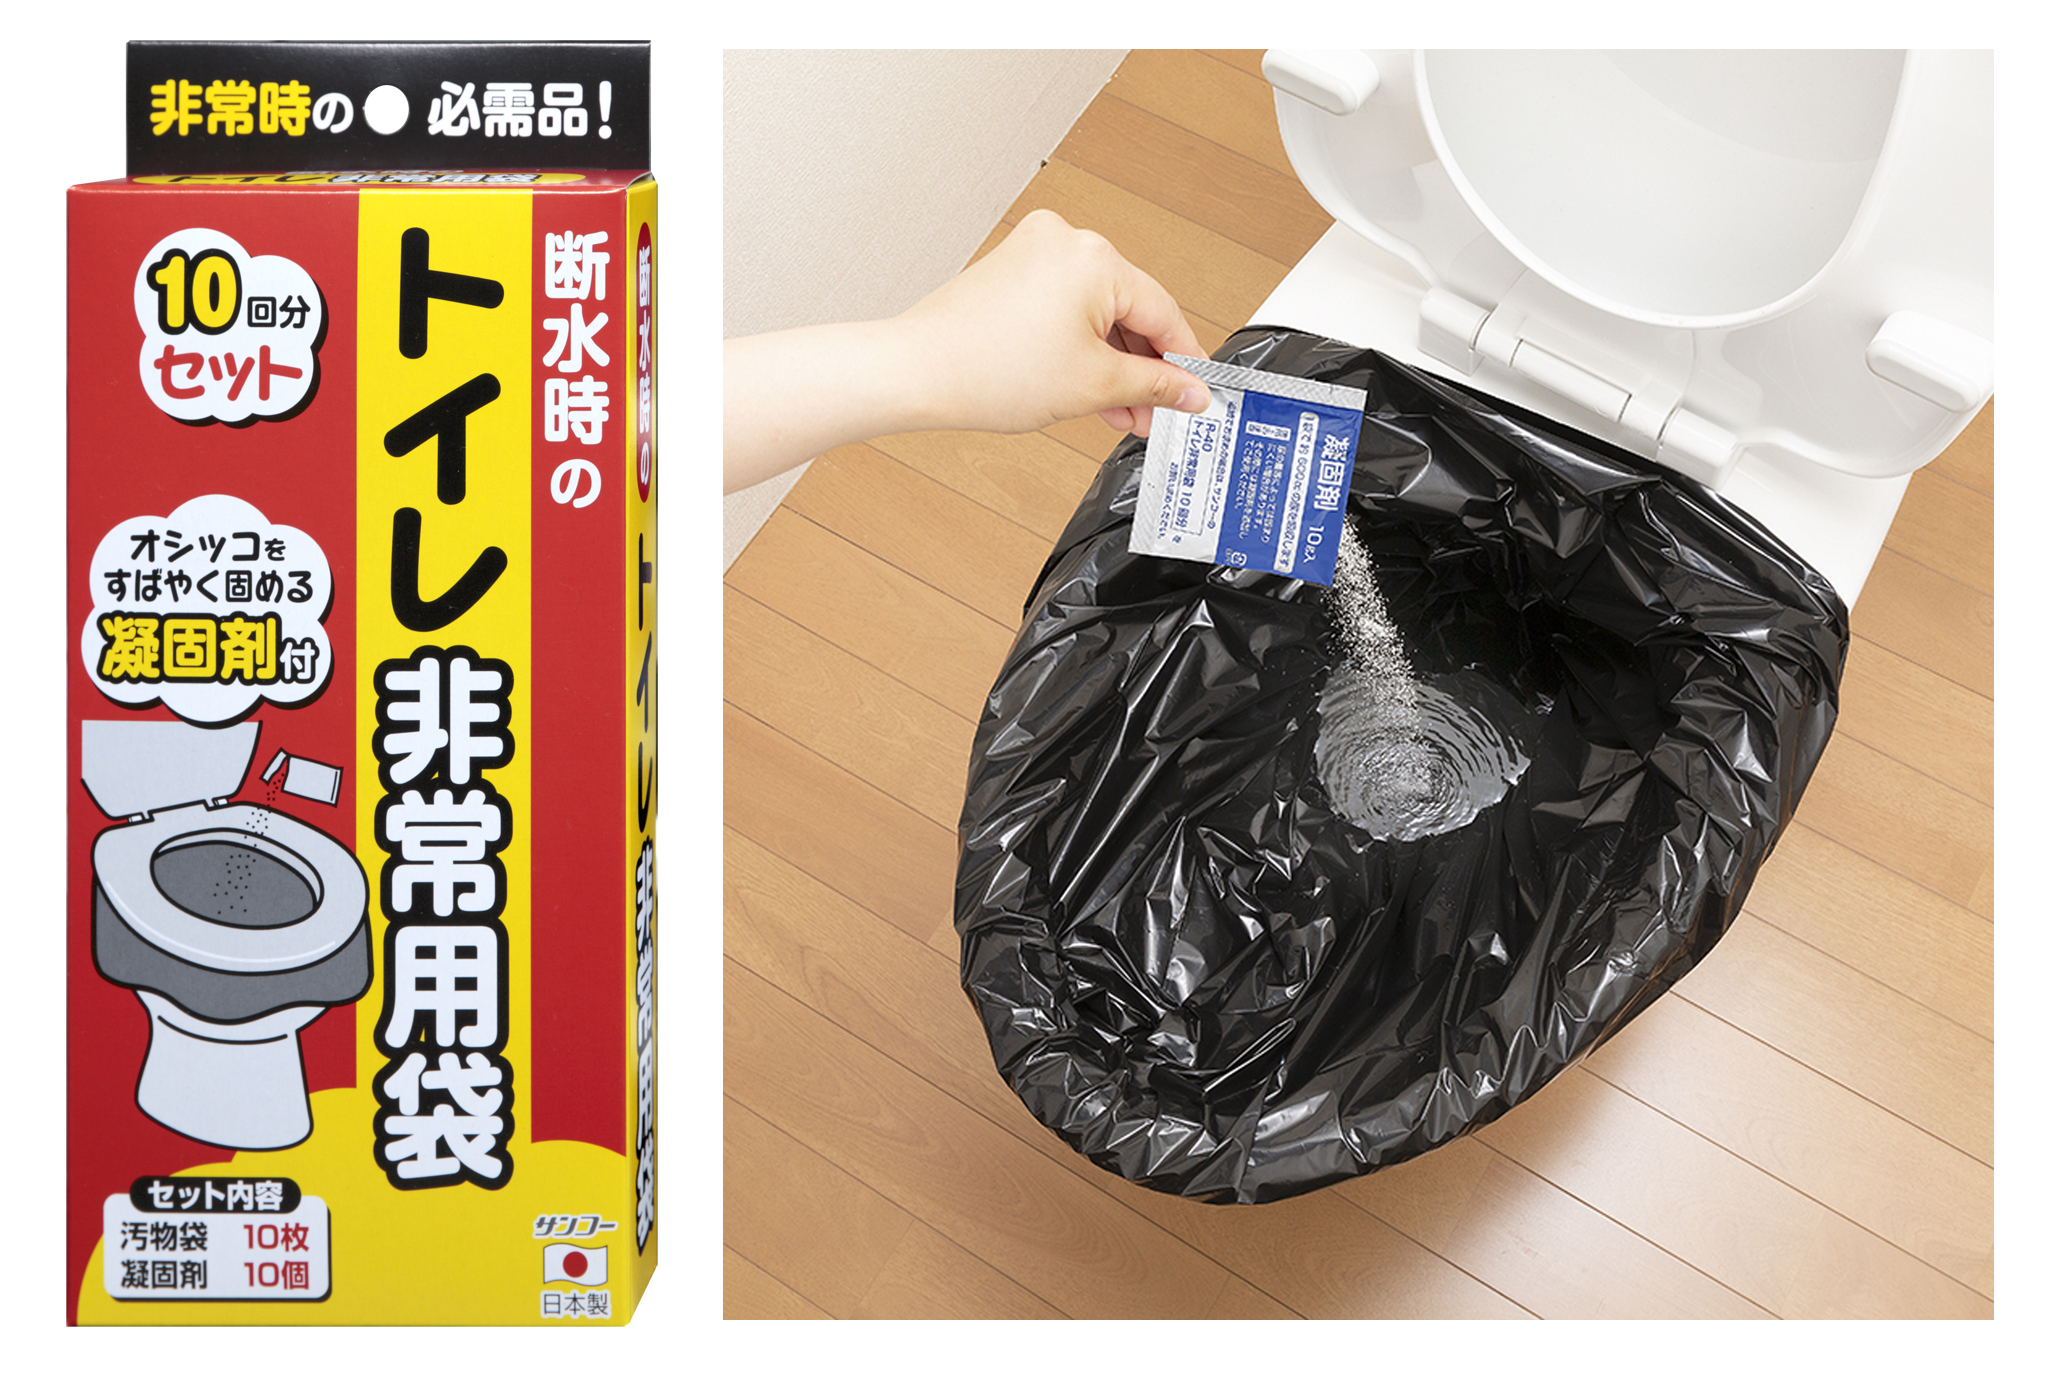 和歌山市へ『トイレ非常用袋 10回分』を2,000個寄贈しました。